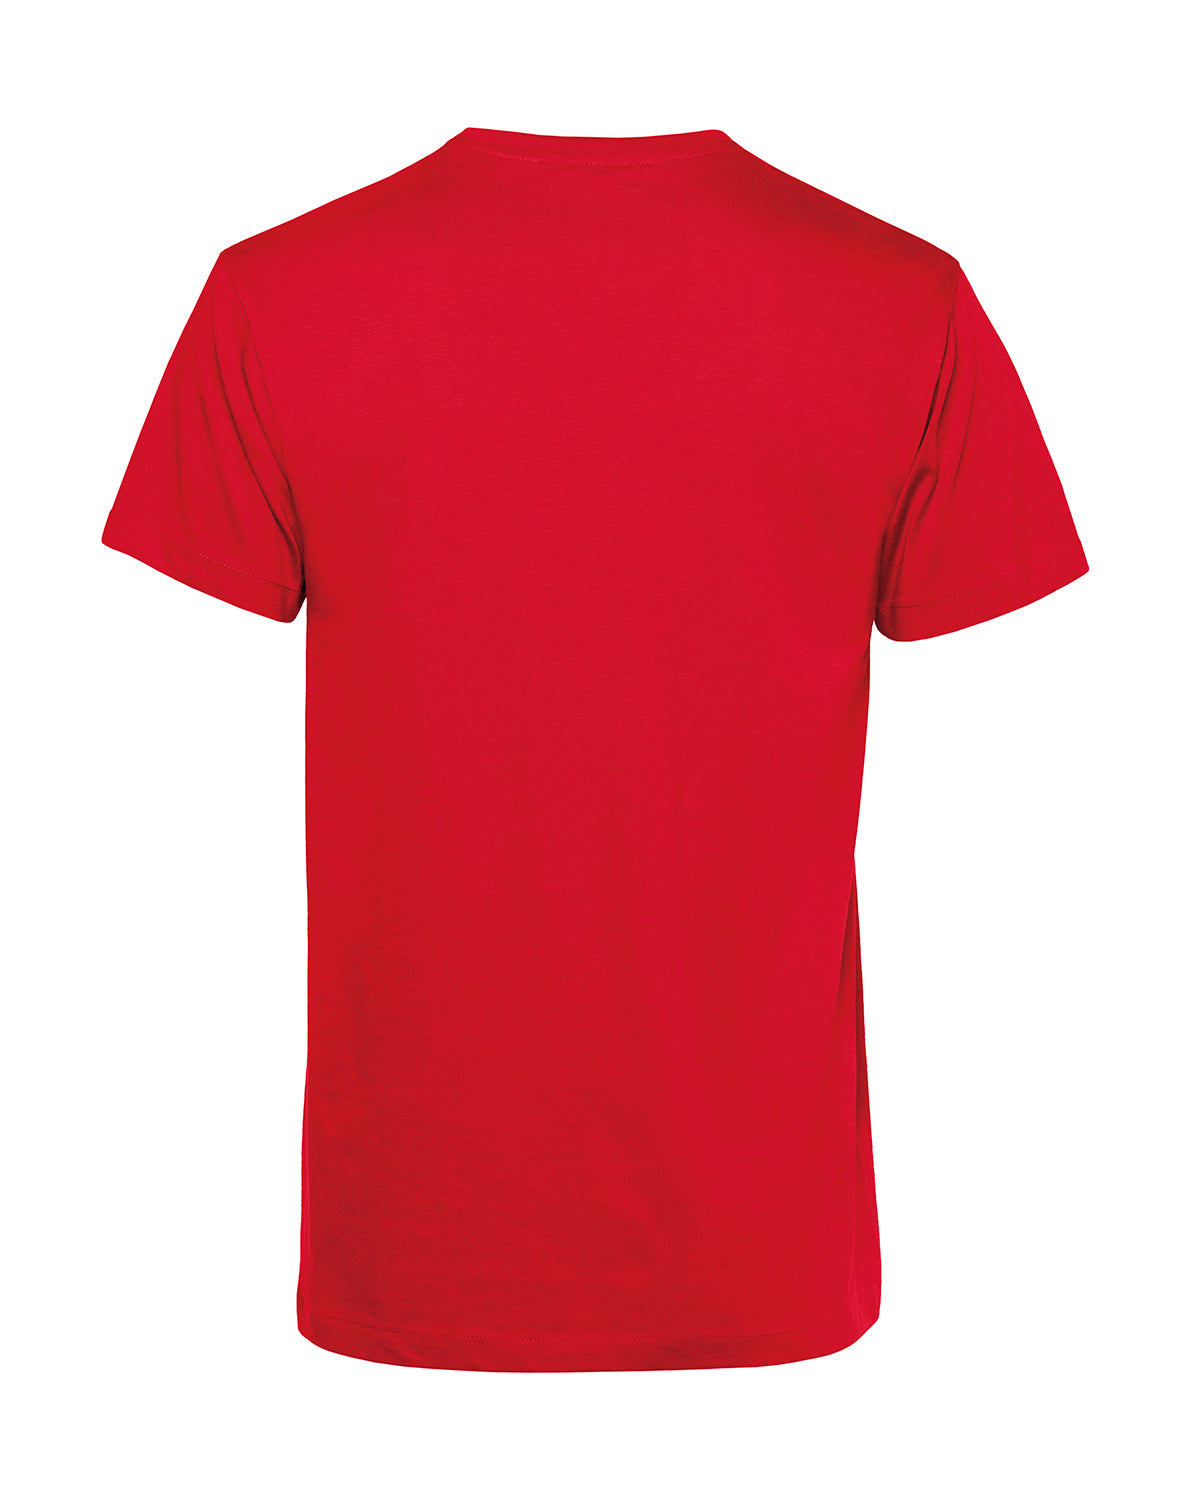 Männer T-Shirt | PÄLZRWald Zwei | Ole-Rot-Weiss